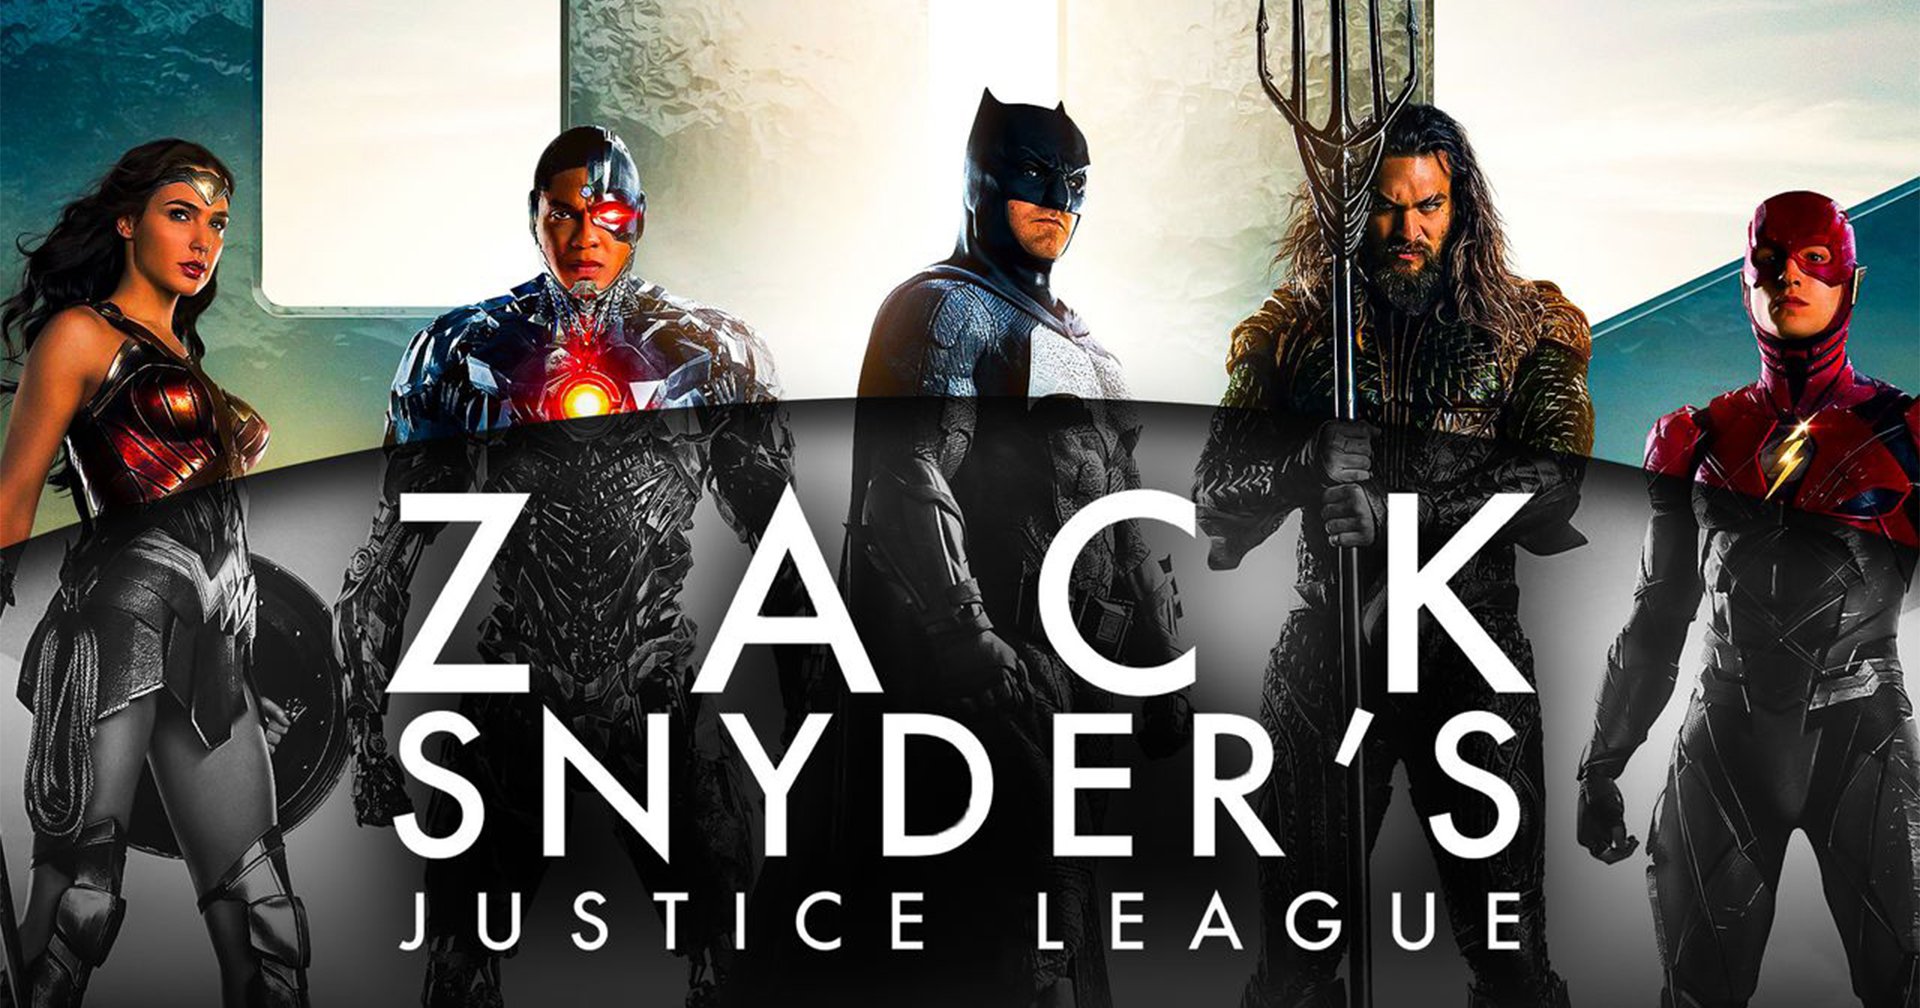 ผู้อำนวยการสร้างแนะนำเอง อย่าดู Zack Snyder’s Justice League แบบยิงยาวรวดเดียวจบ